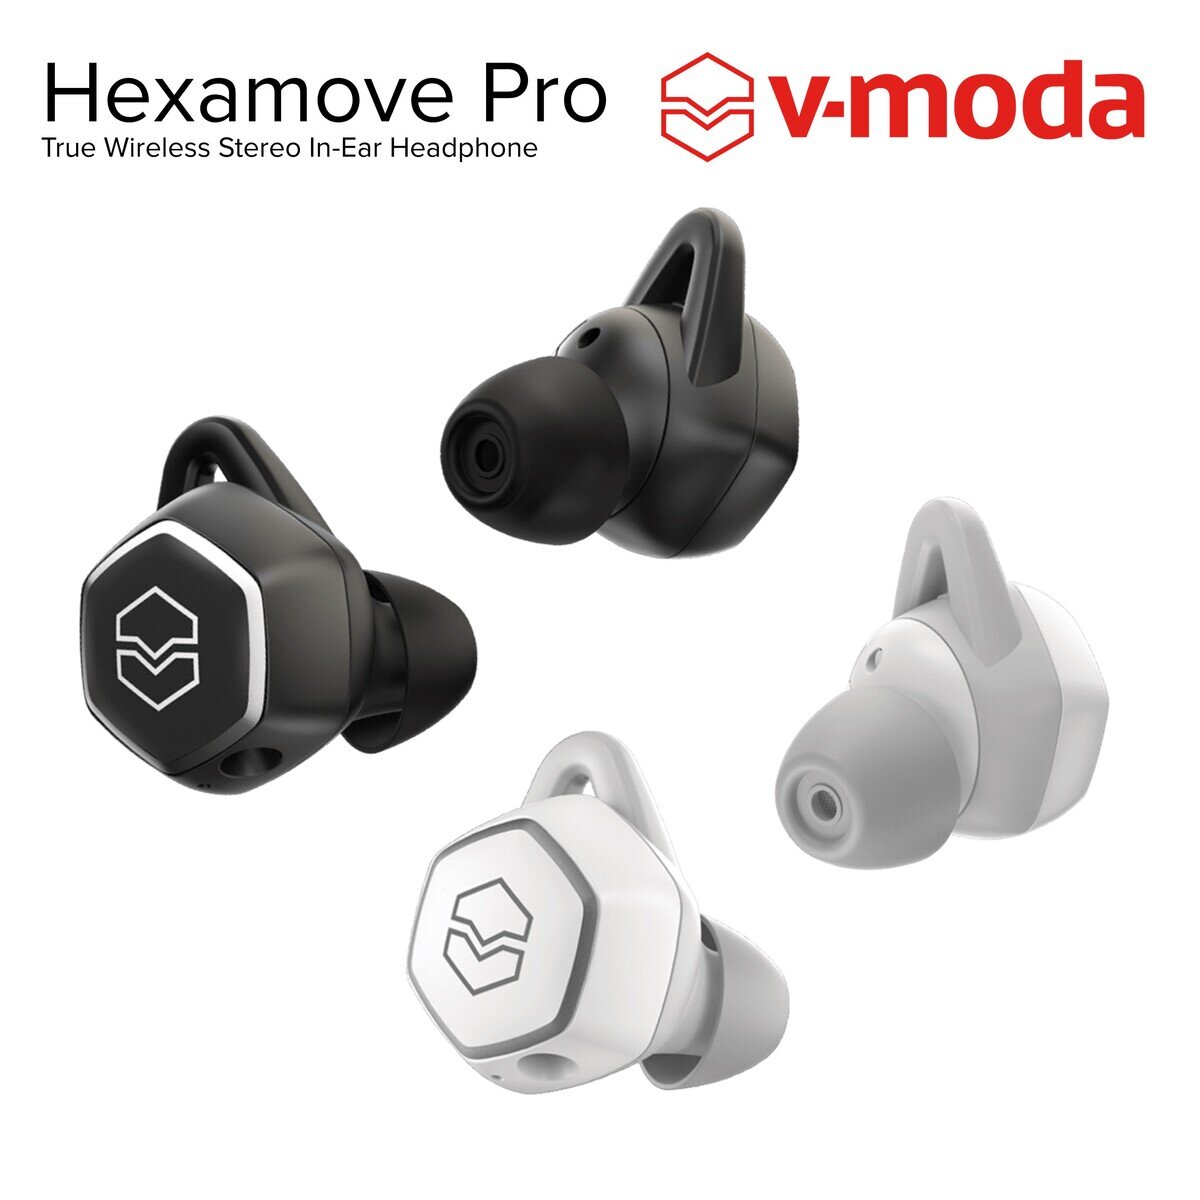 V-MODA 完全ワイヤレスイヤホン Hexamove Pro | Costco Japan